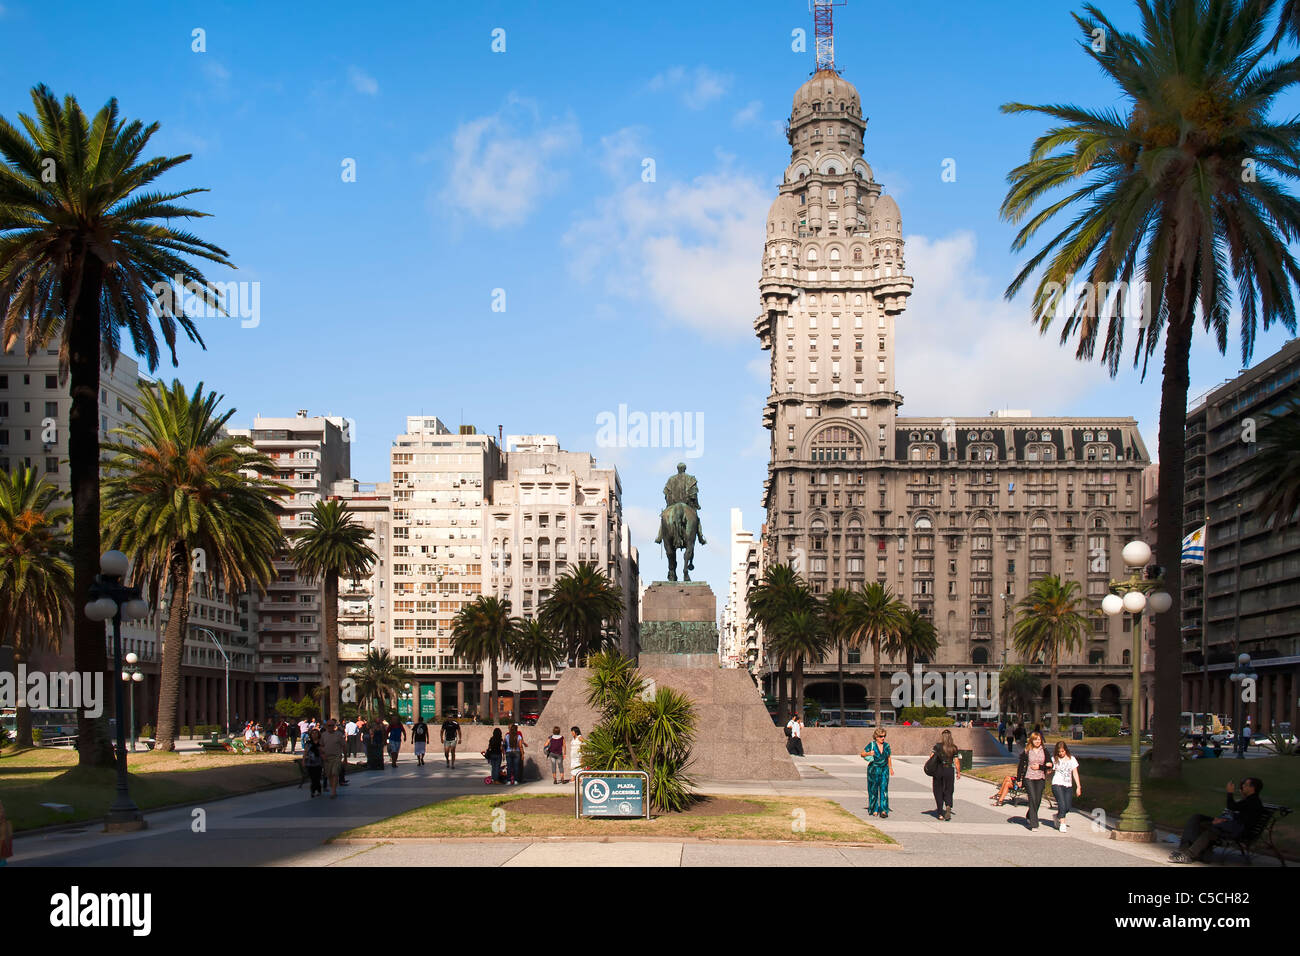 La Plaza Independencia, el Palacio Salvo y José Artigas estatua ecuestre, Montevideo, Uruguay, América del Sur Foto de stock